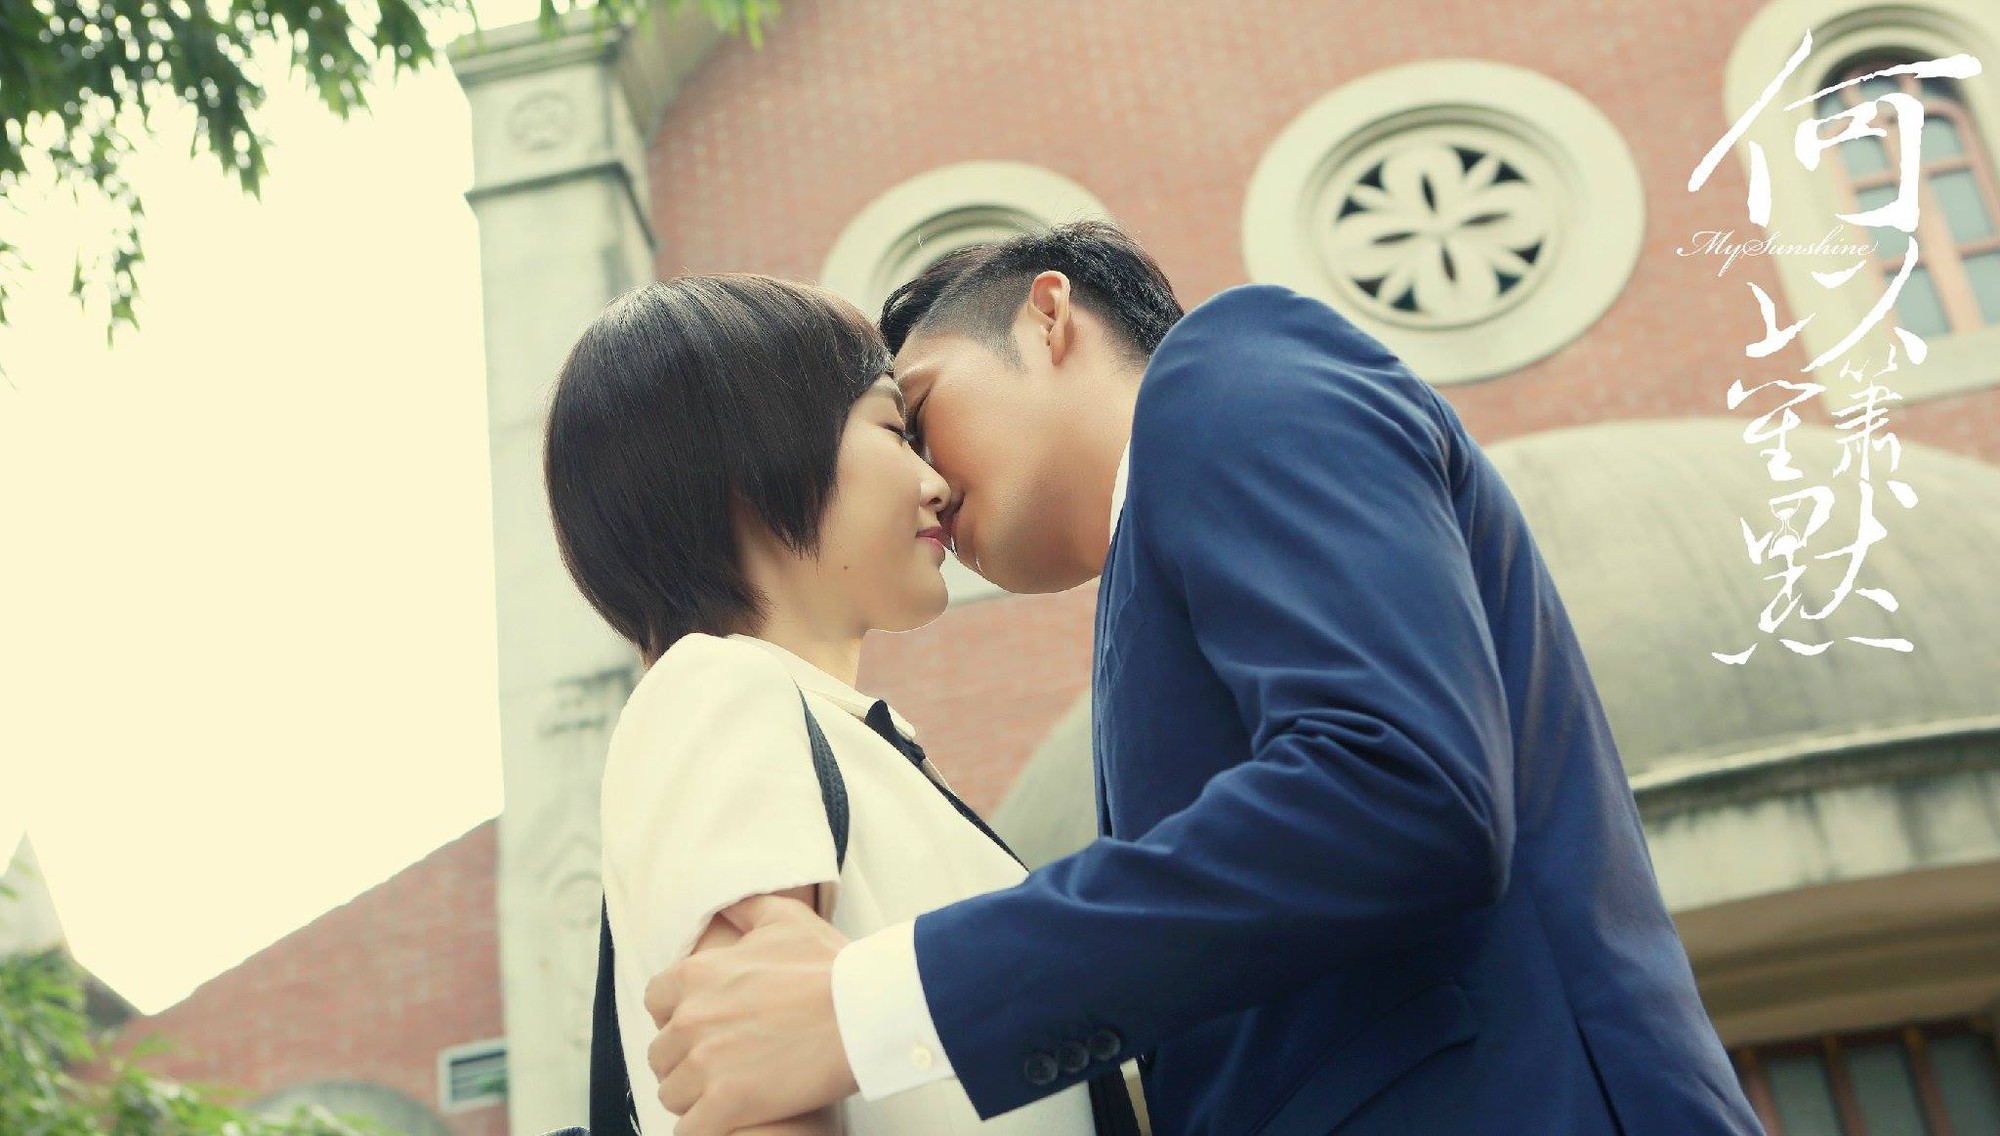 Đường Yên: Người xứng đáng với giải nữ hoàng kiss scene của màn ảnh Hoa Ngữ - Ảnh 4.